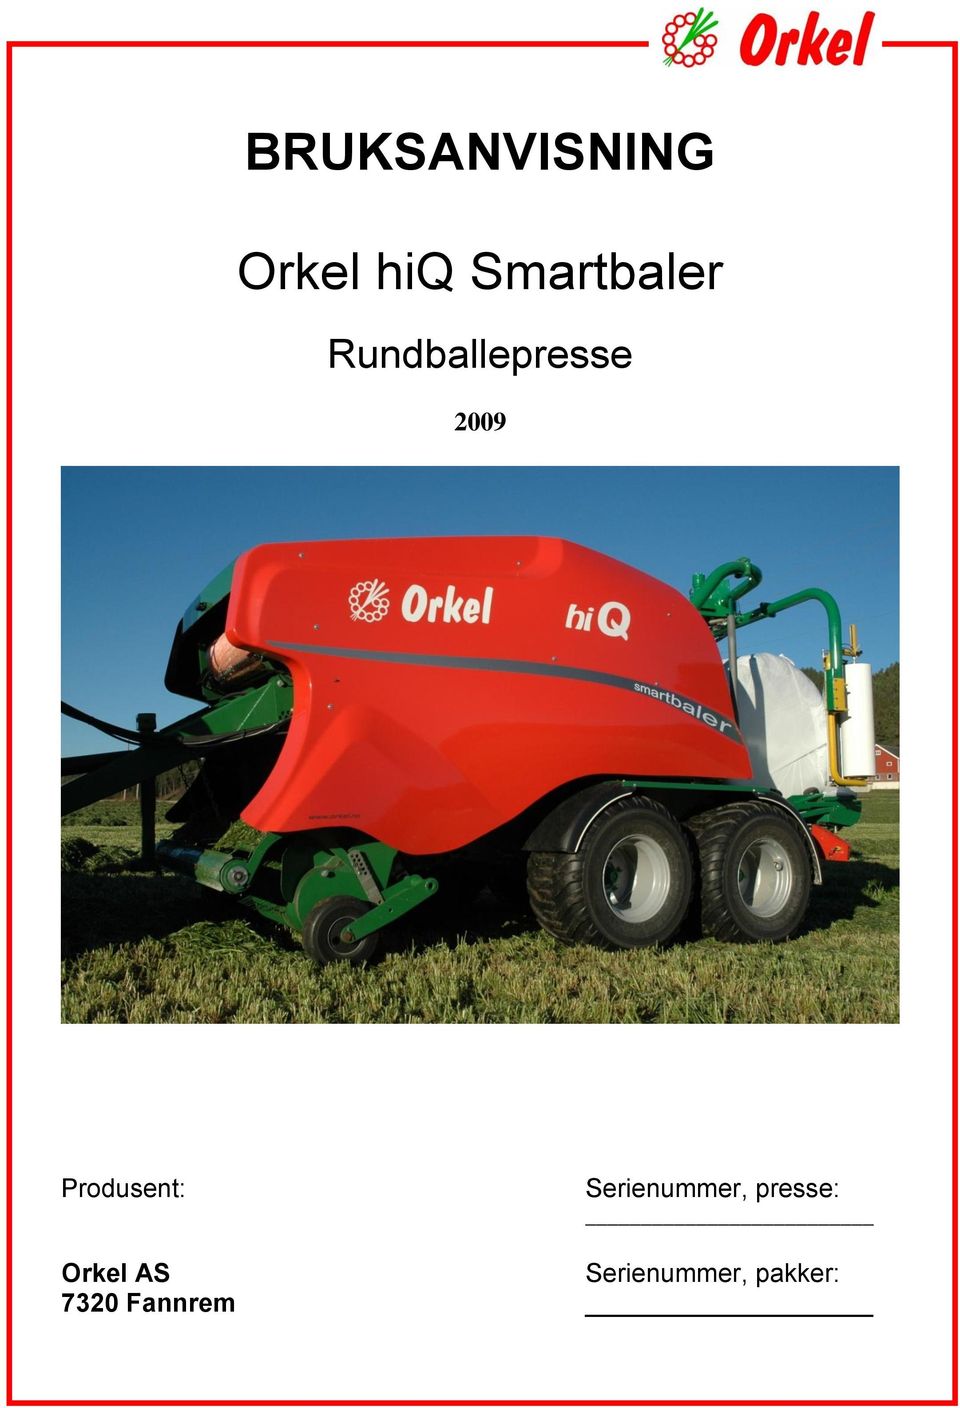 BRUKSANVISNING. Orkel hiq Smartbaler - PDF Free Download